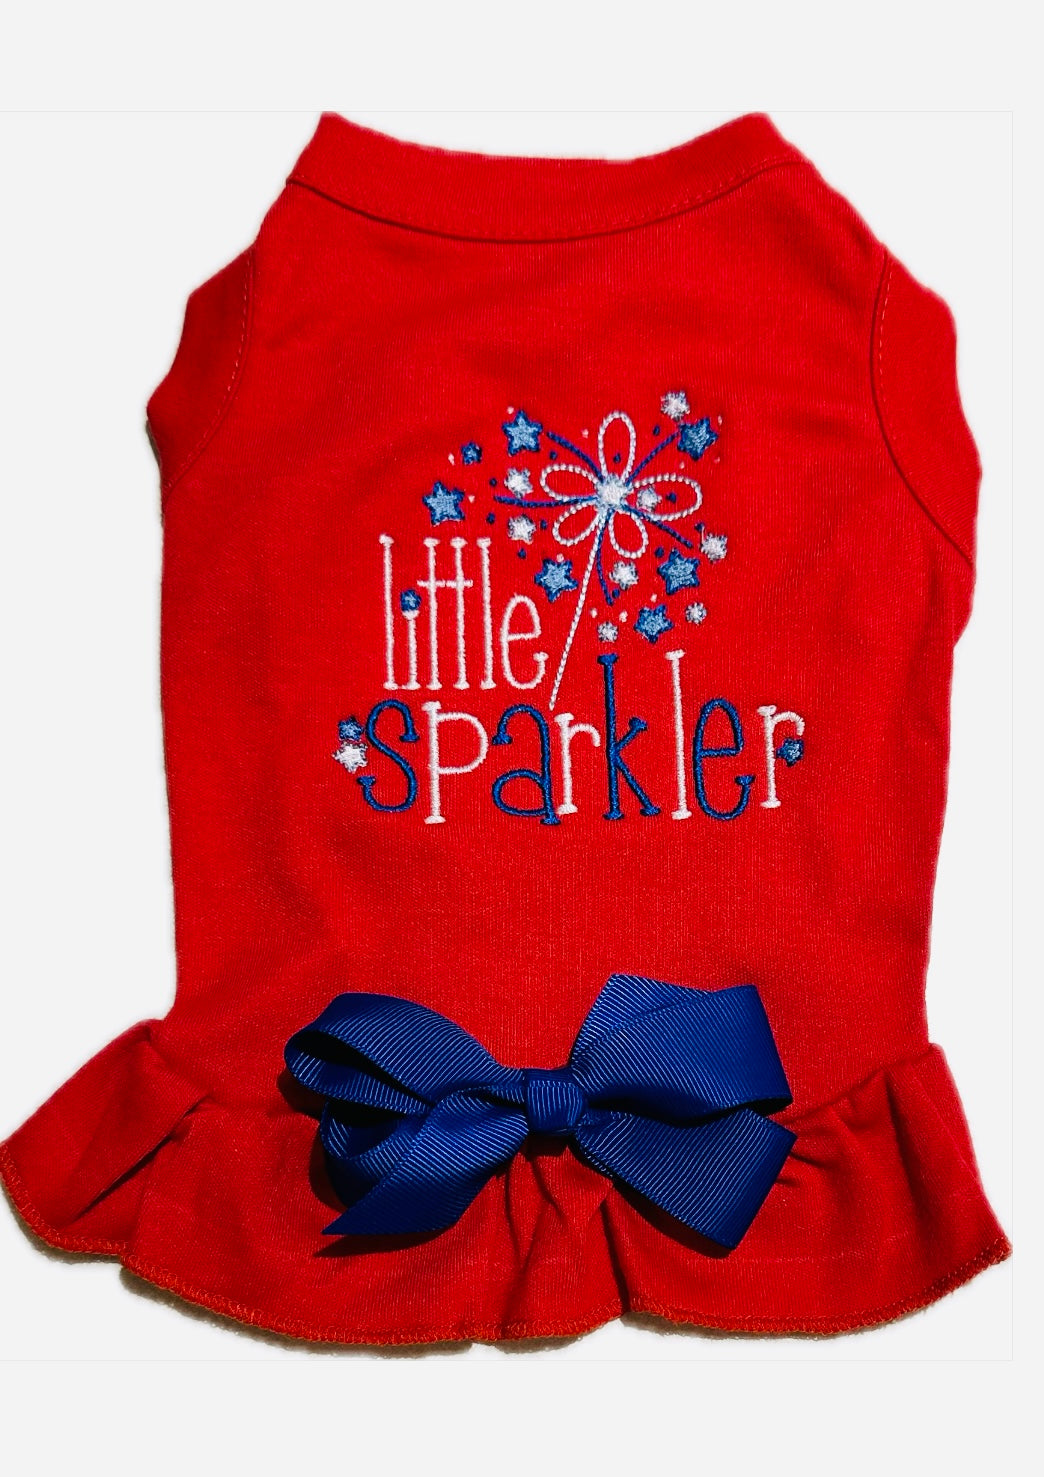 Little Sparkler Tee Shirt Dress